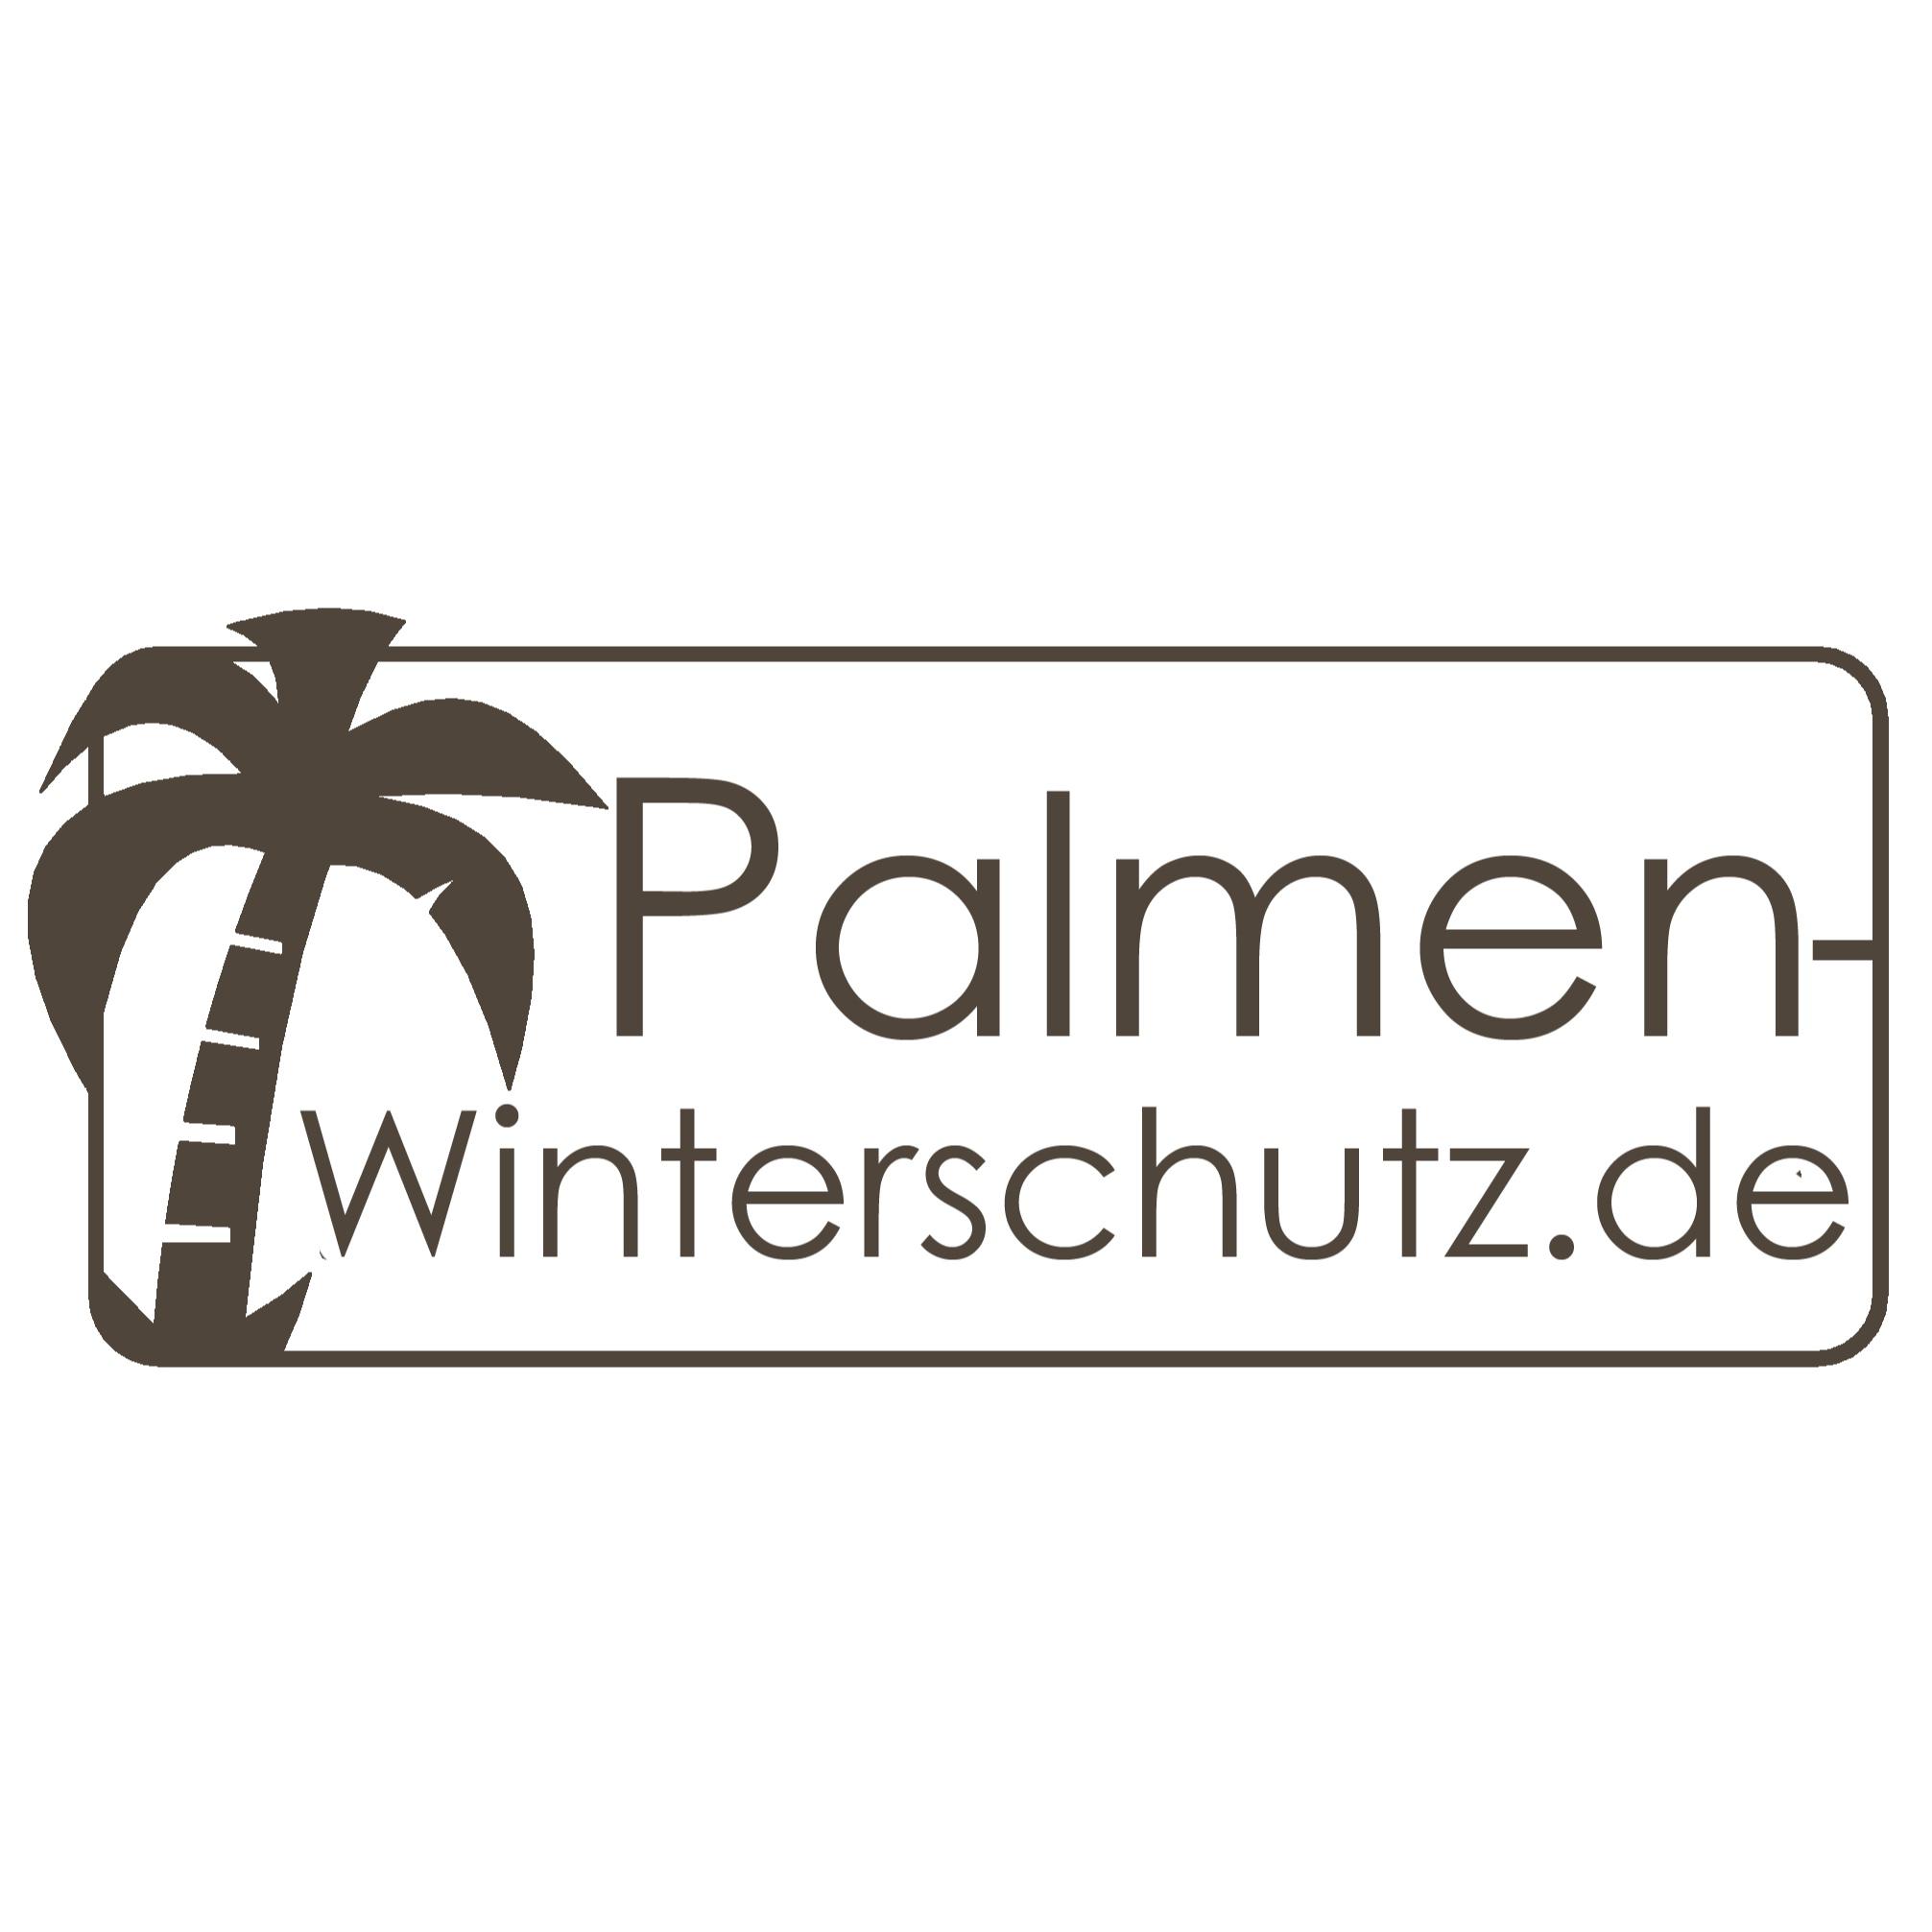 Winterschutz für Palmen und Mediterrane Inh. Rene Ehrlich in Gangloffsömmern - Logo